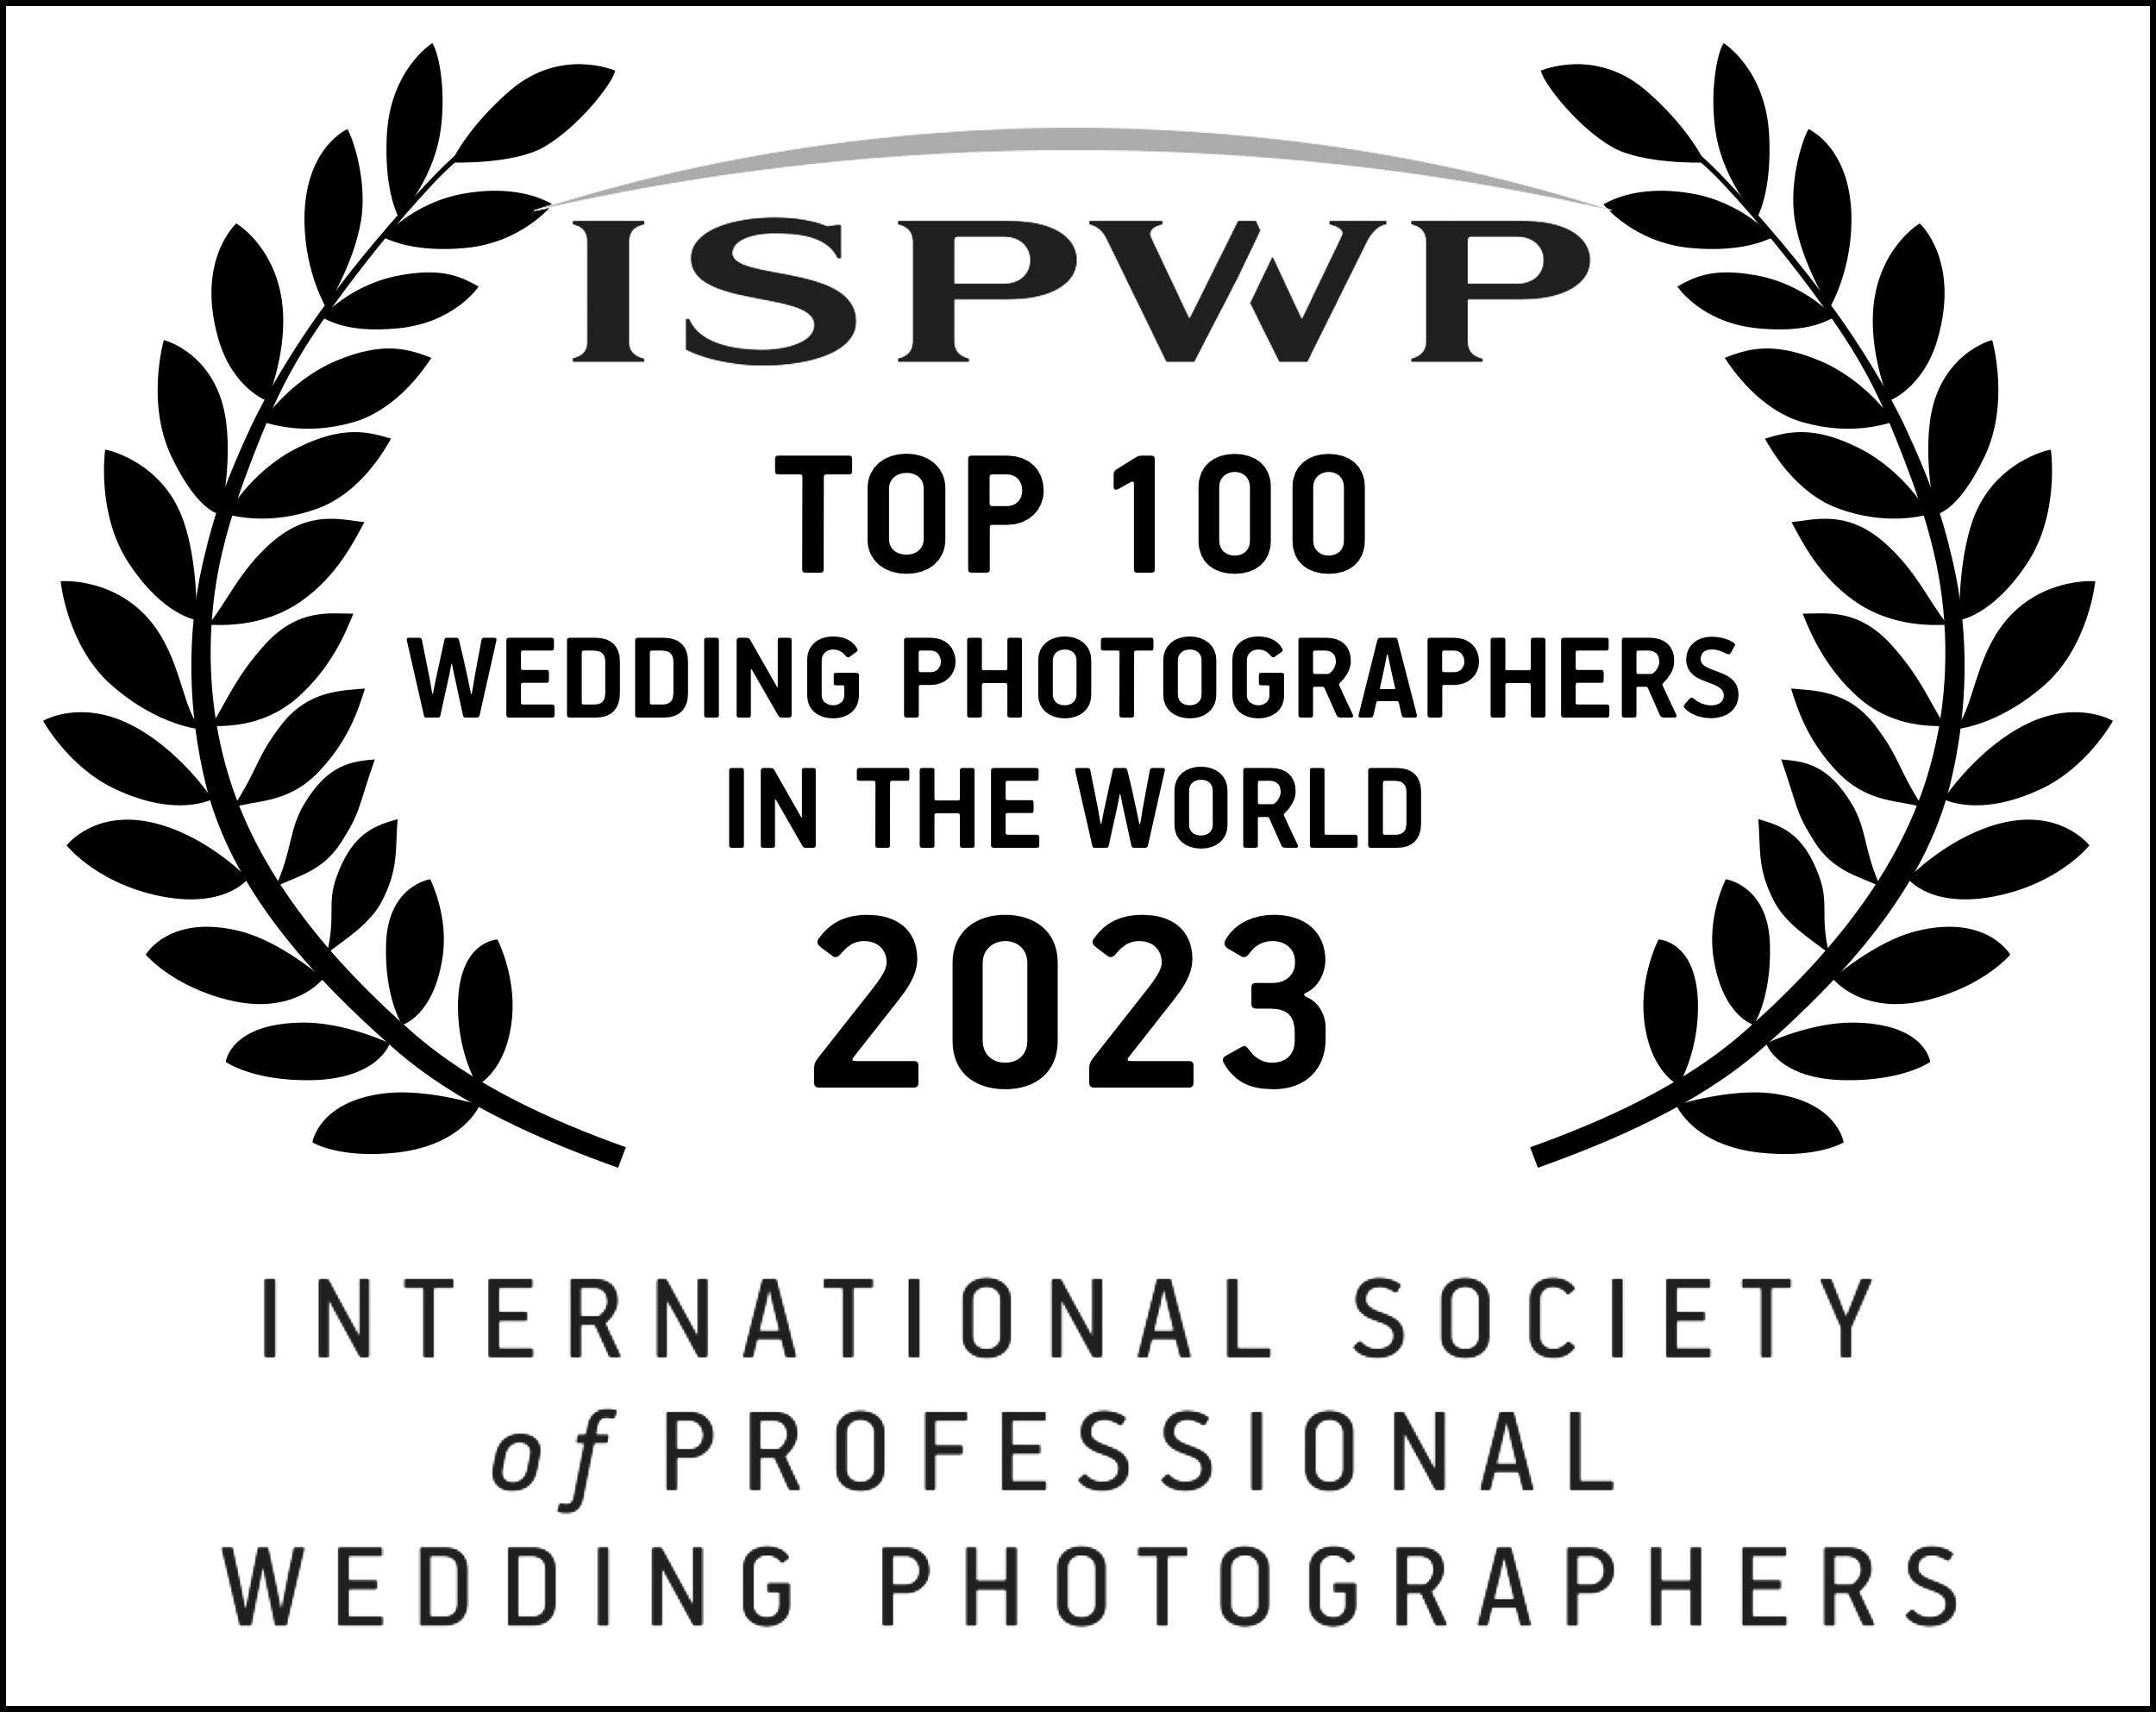 meilleurs photographes de mariage selon le concours ispwp